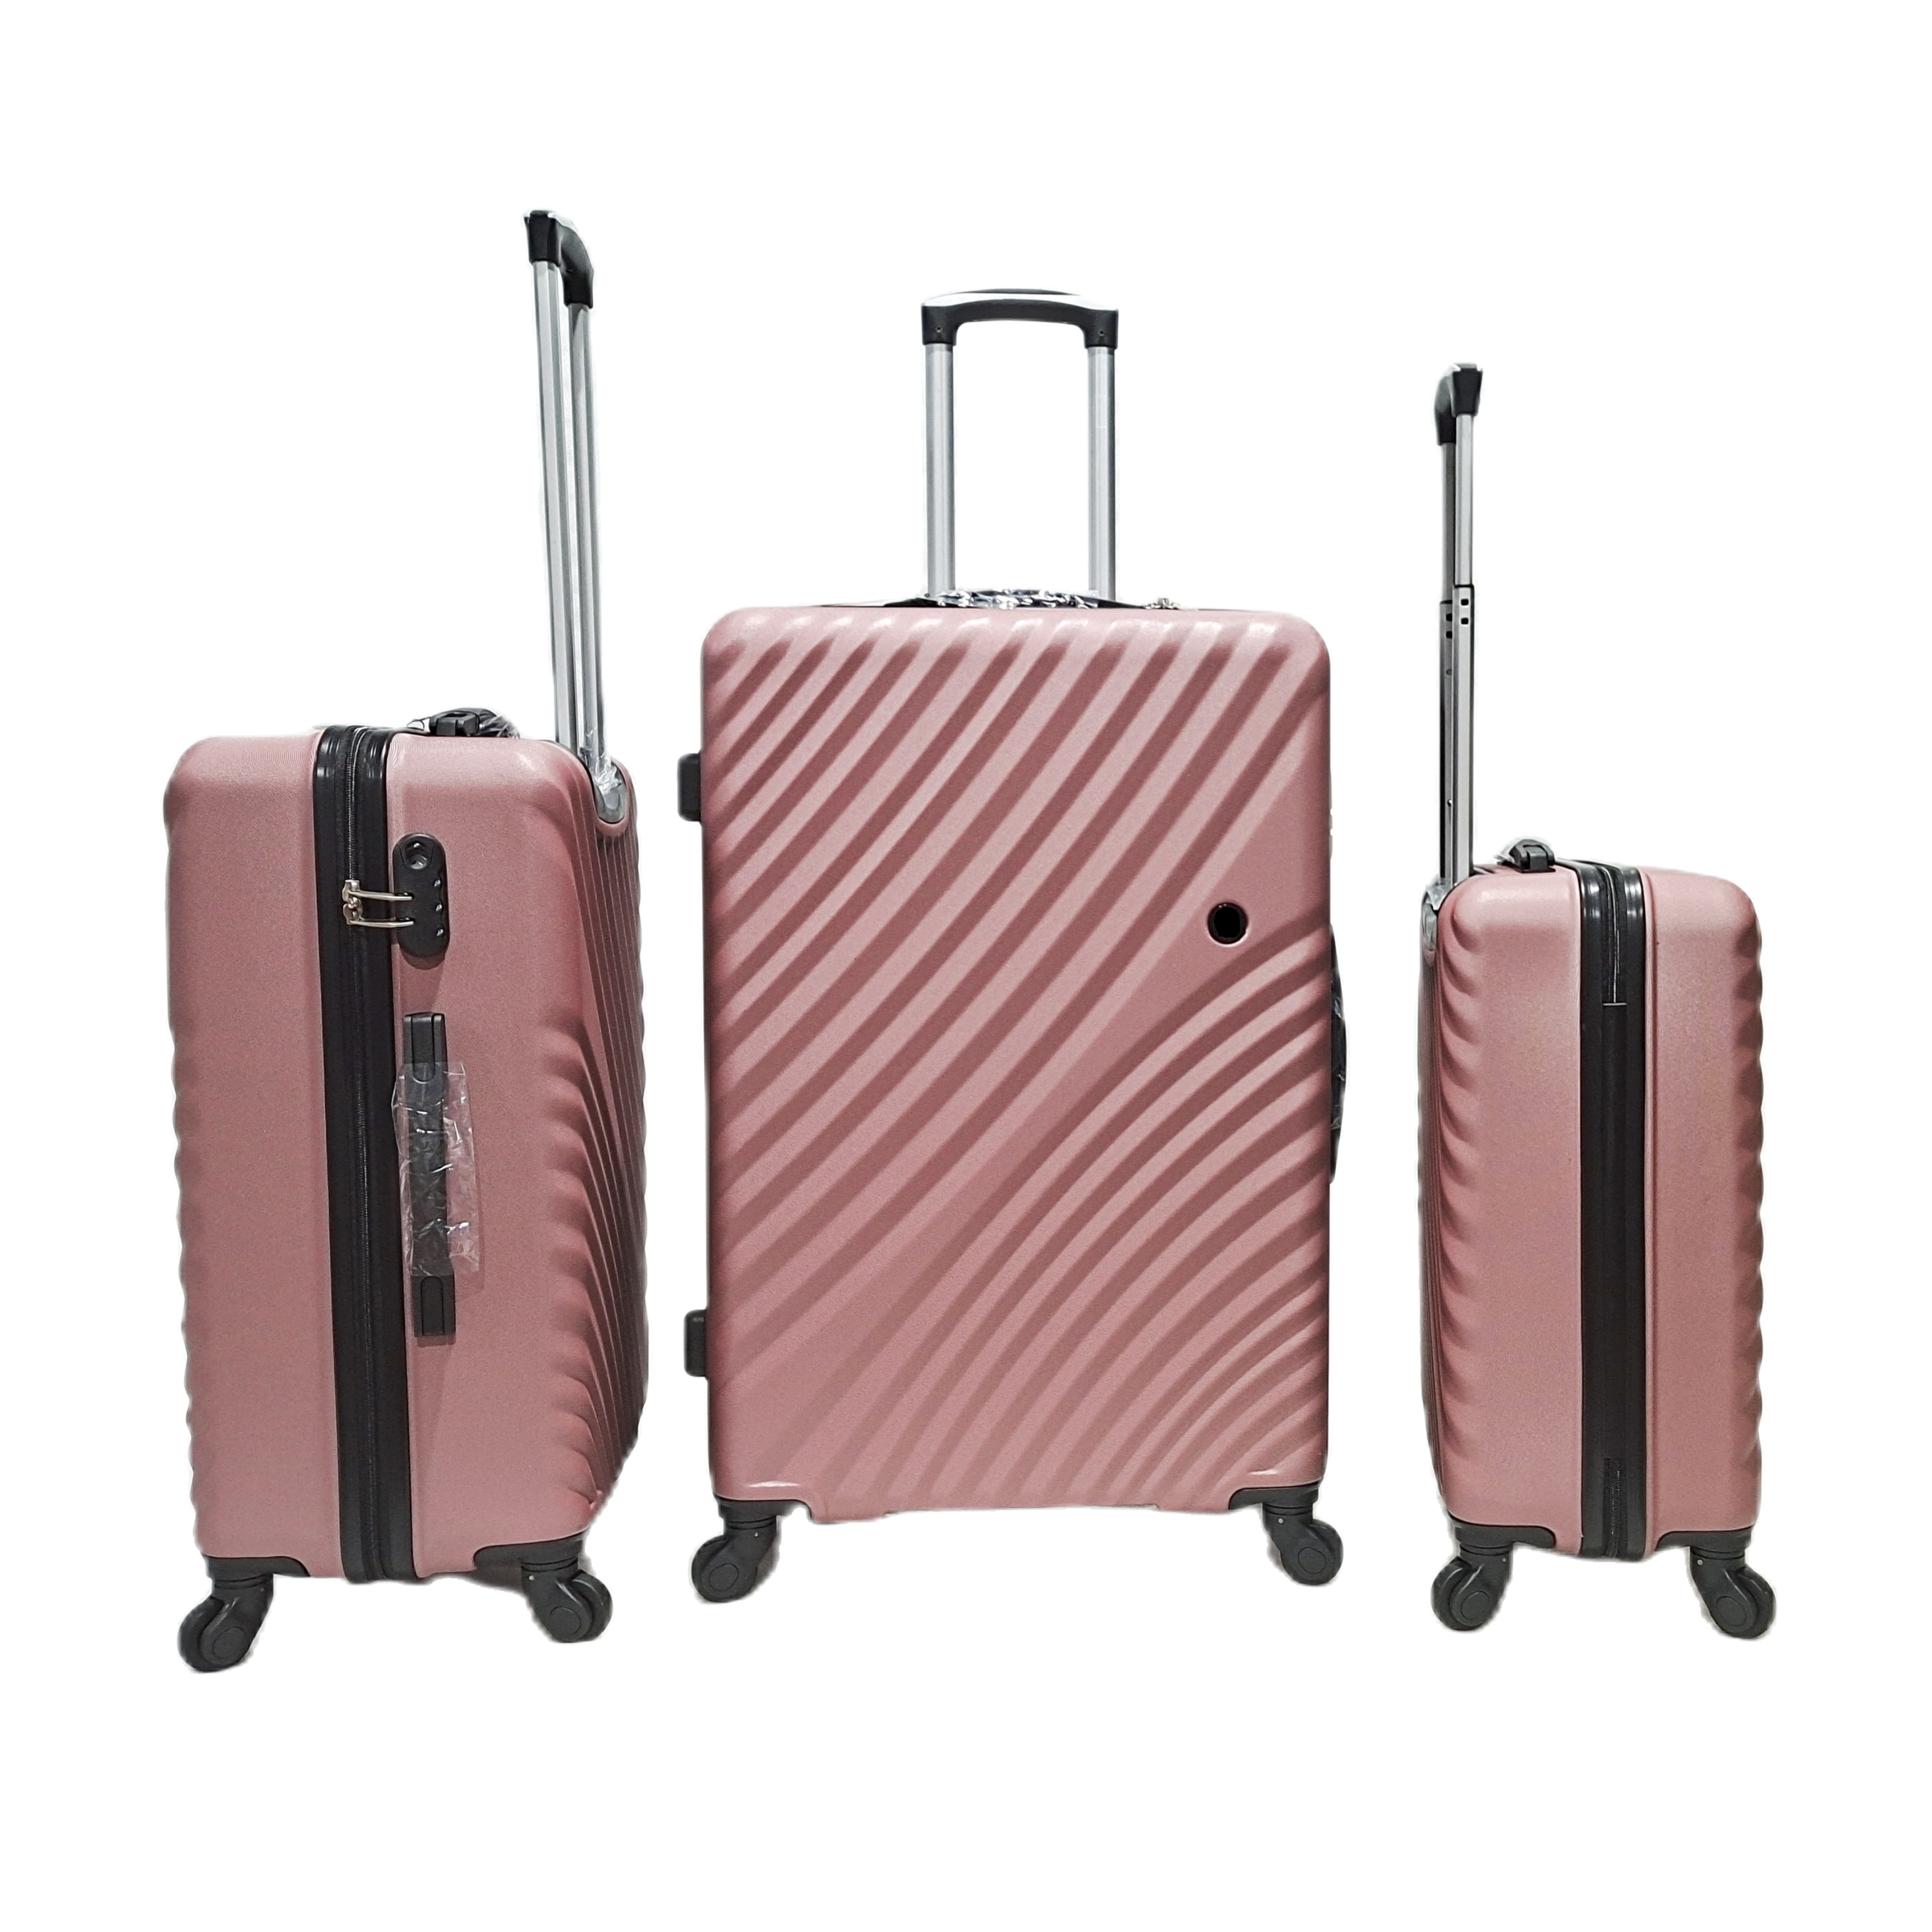 Nouveau Design ABS valises bagages sacs de voyage 4 Spinner roue chariot valise ensemble